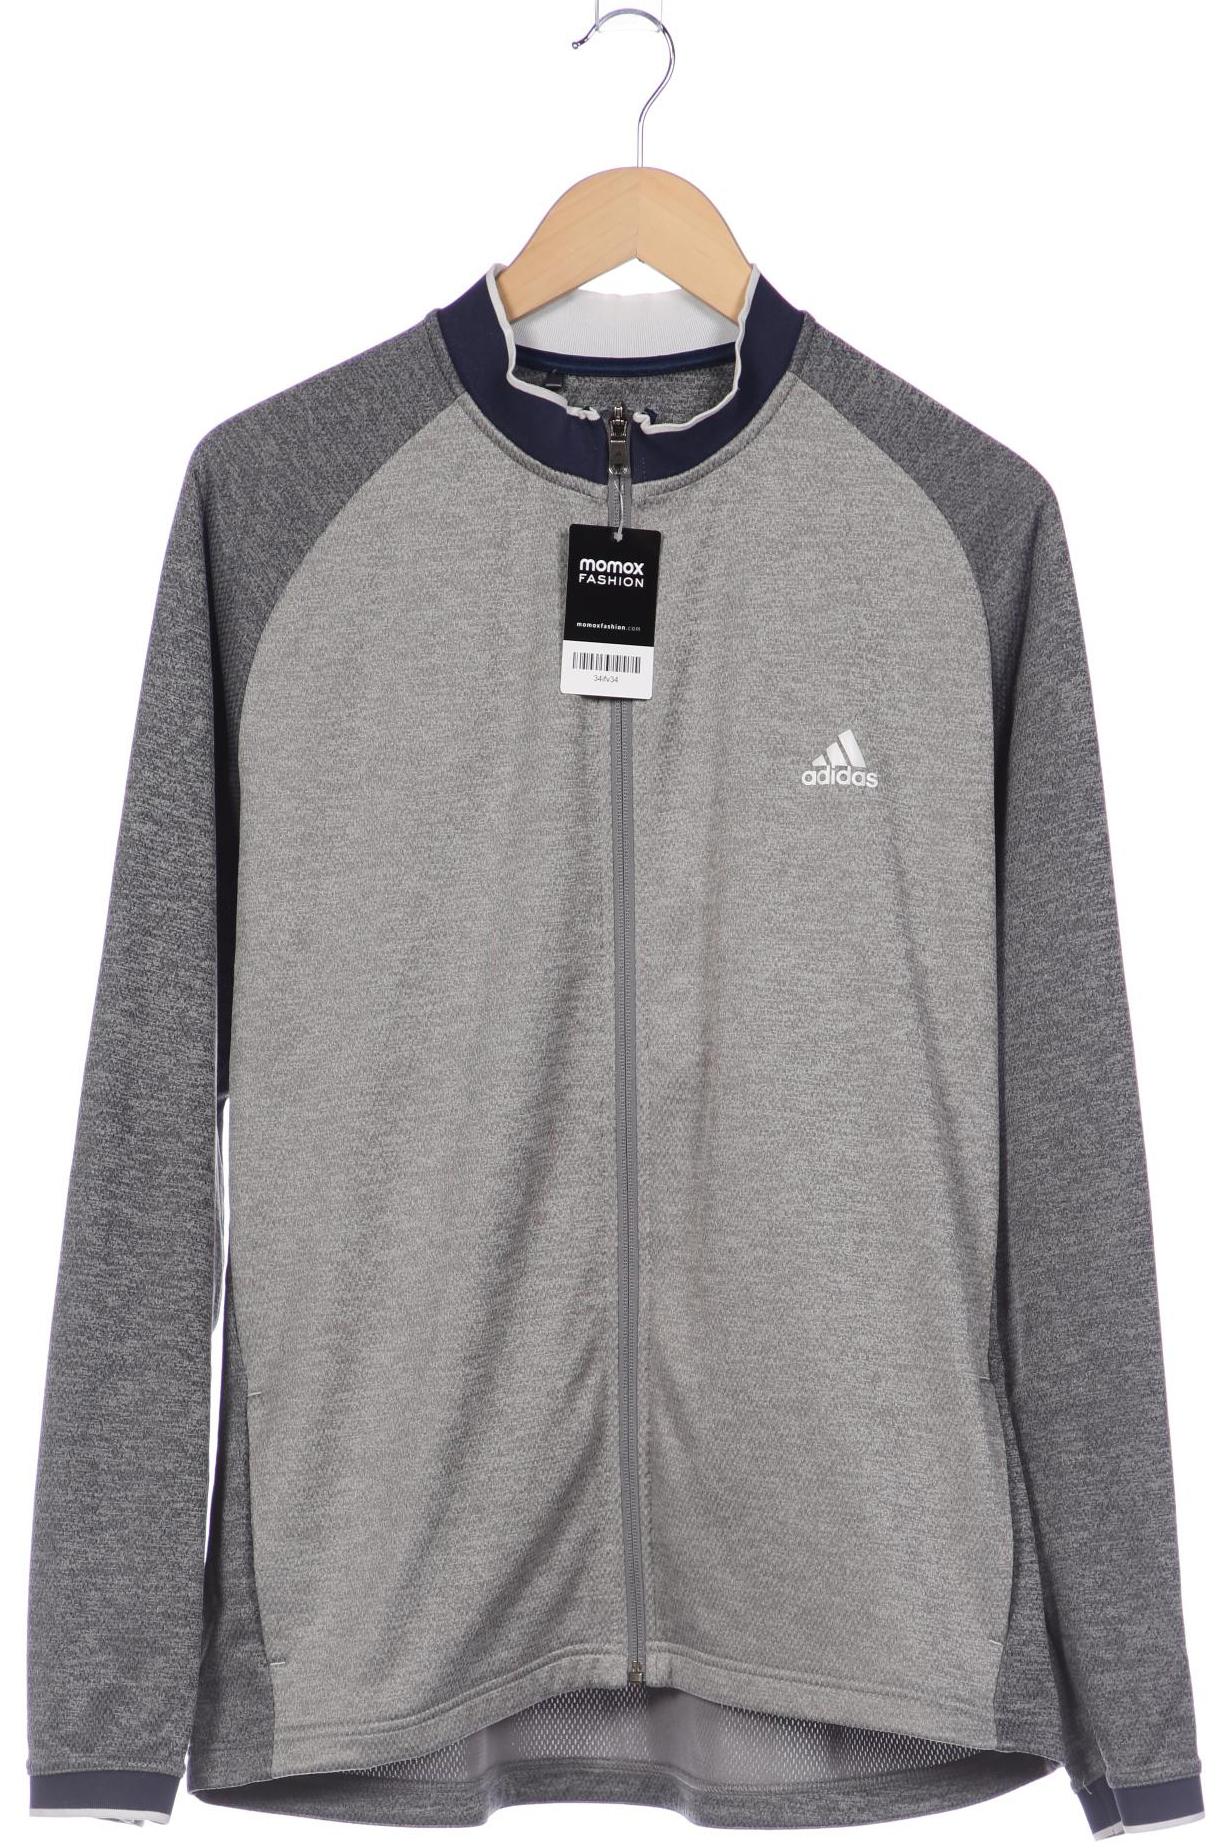 adidas Herren Sweatshirt, grau, Gr. 54 von Adidas